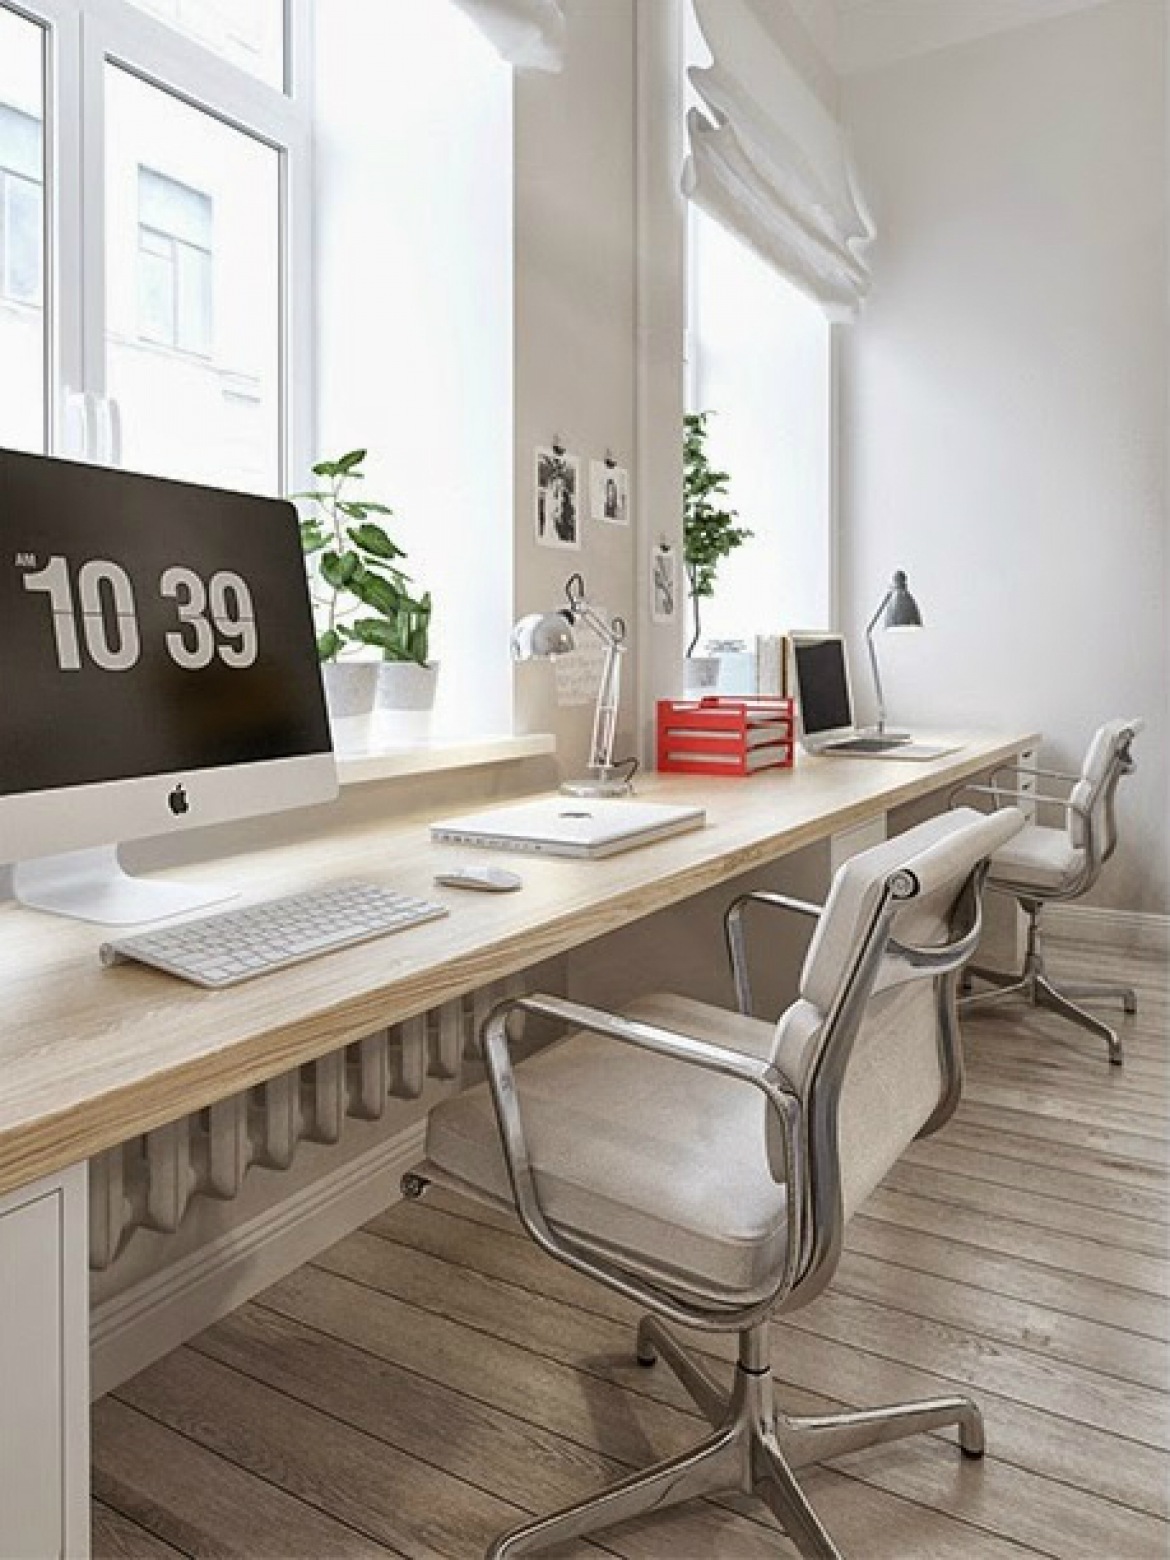 Pomysł na podwójne długie biurko umocowane pod oknami w salonie (26304)